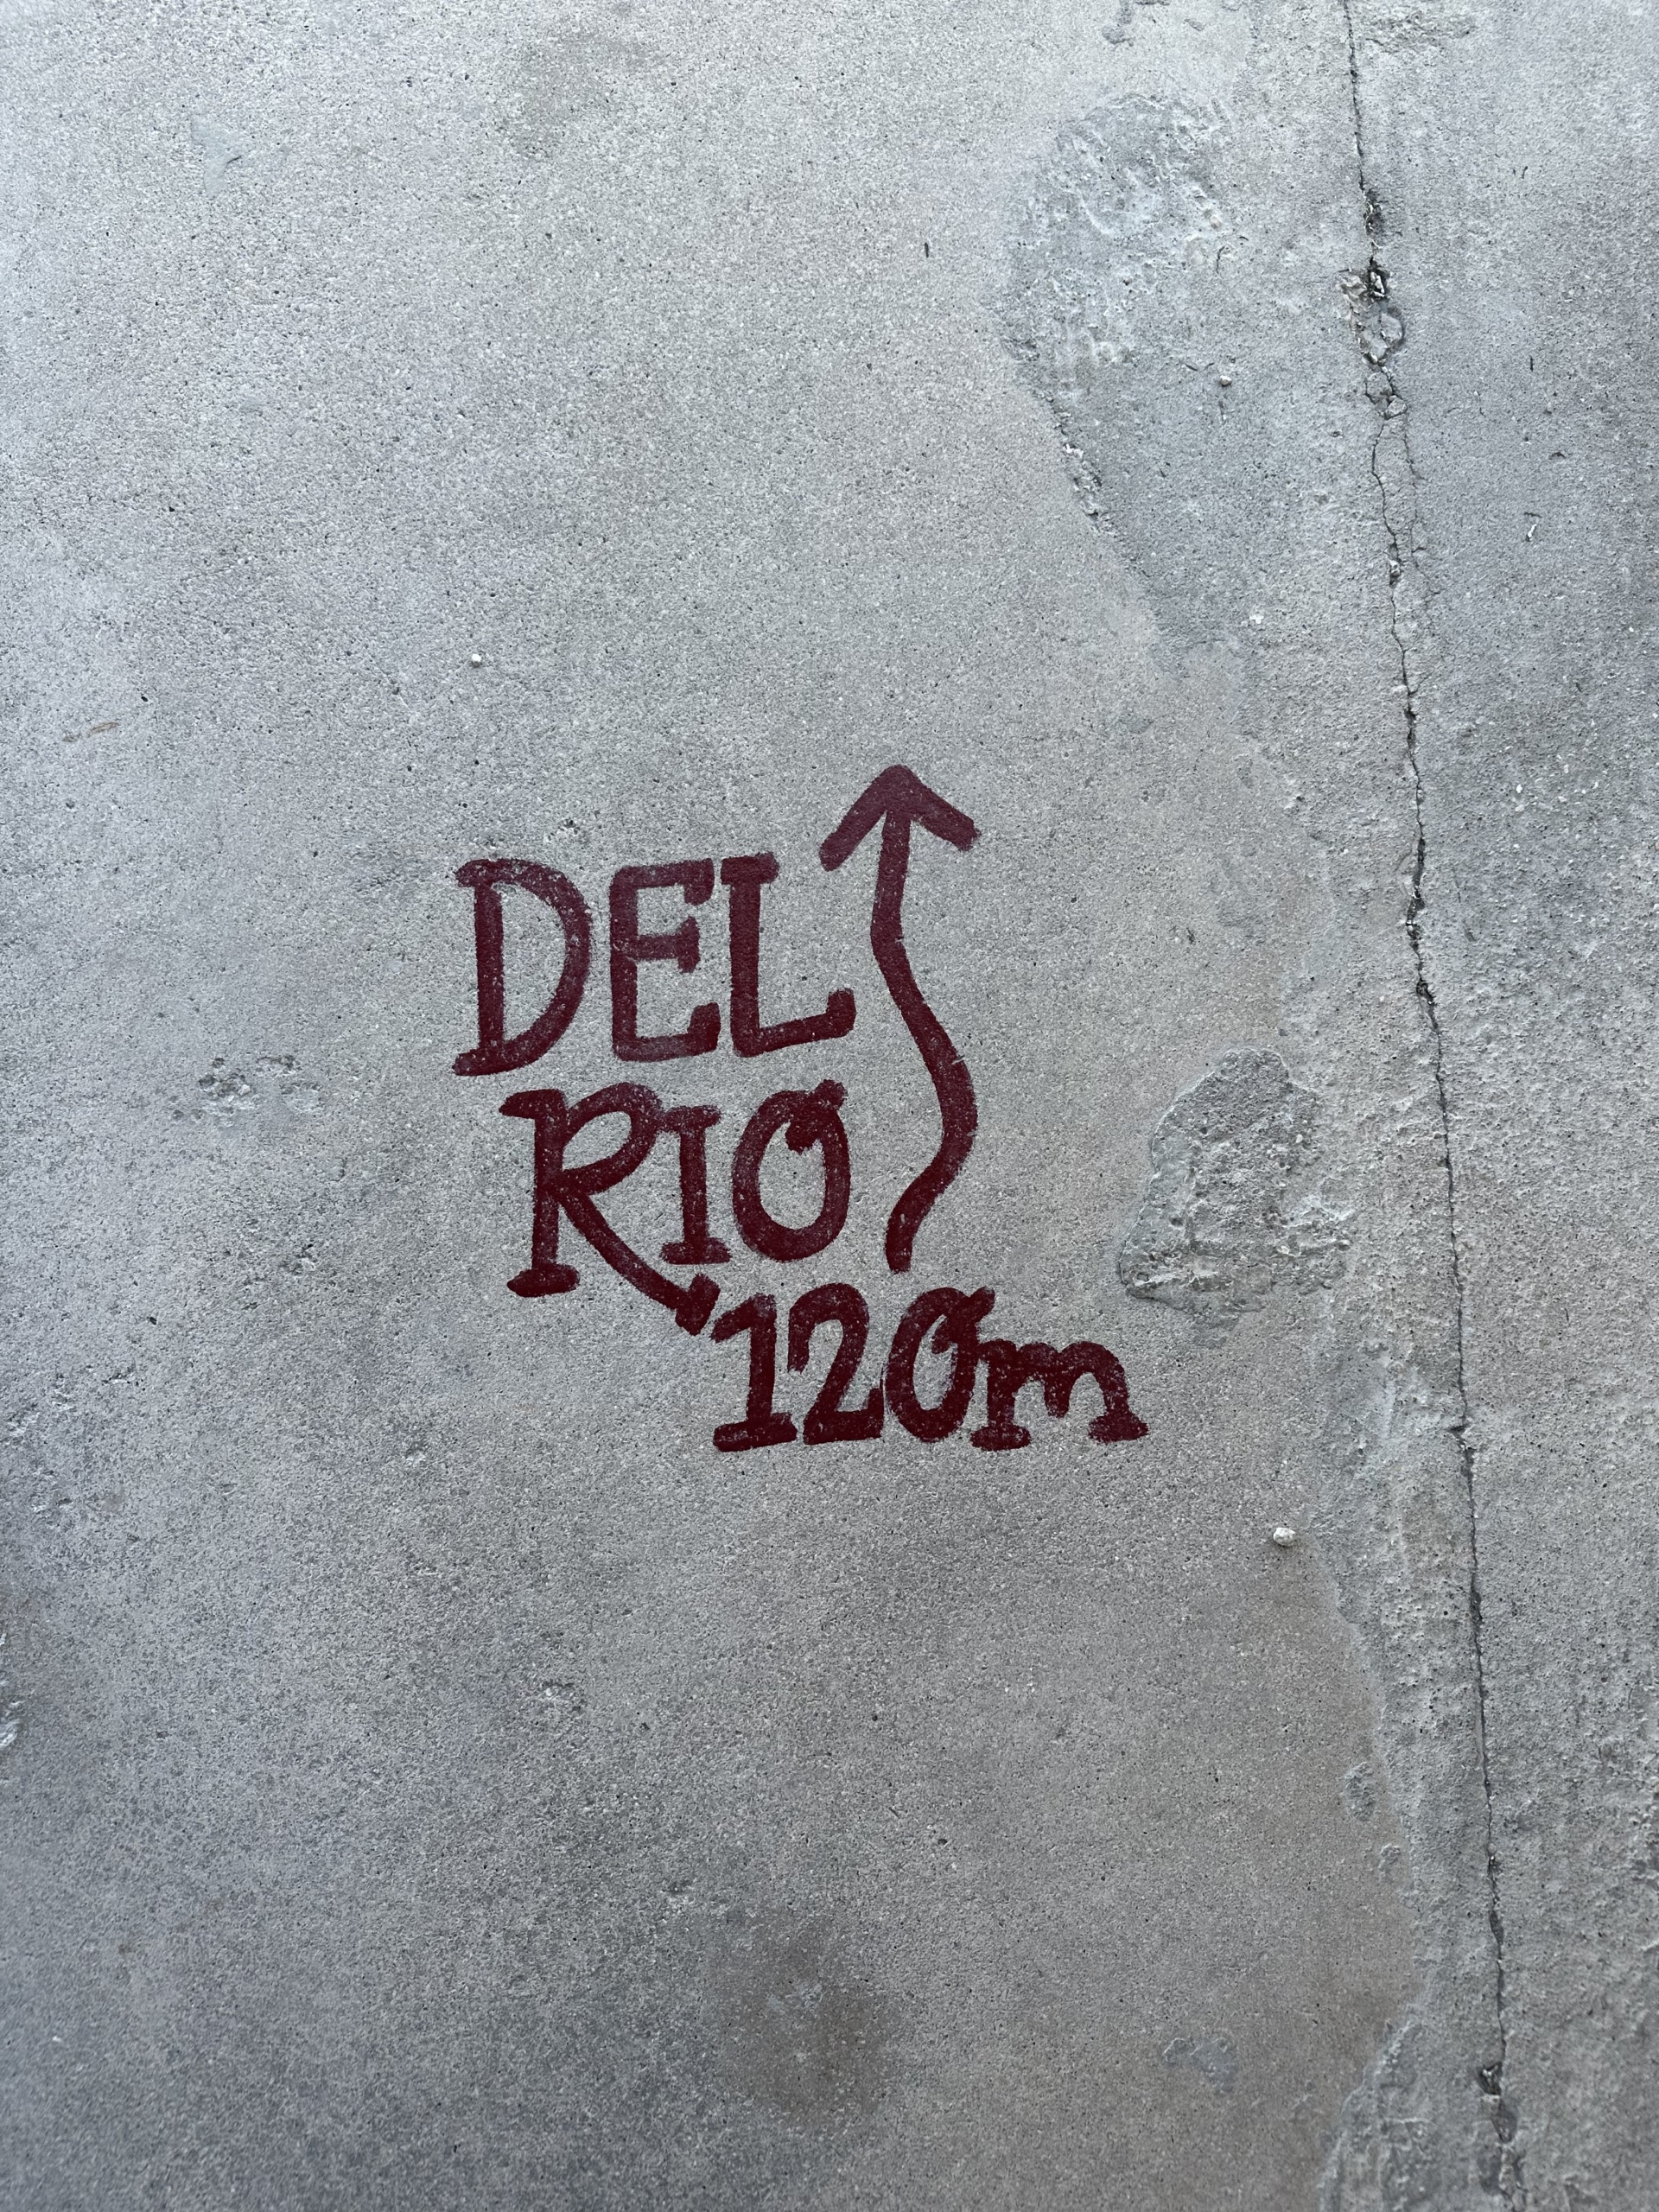 Del Rio 120 miles